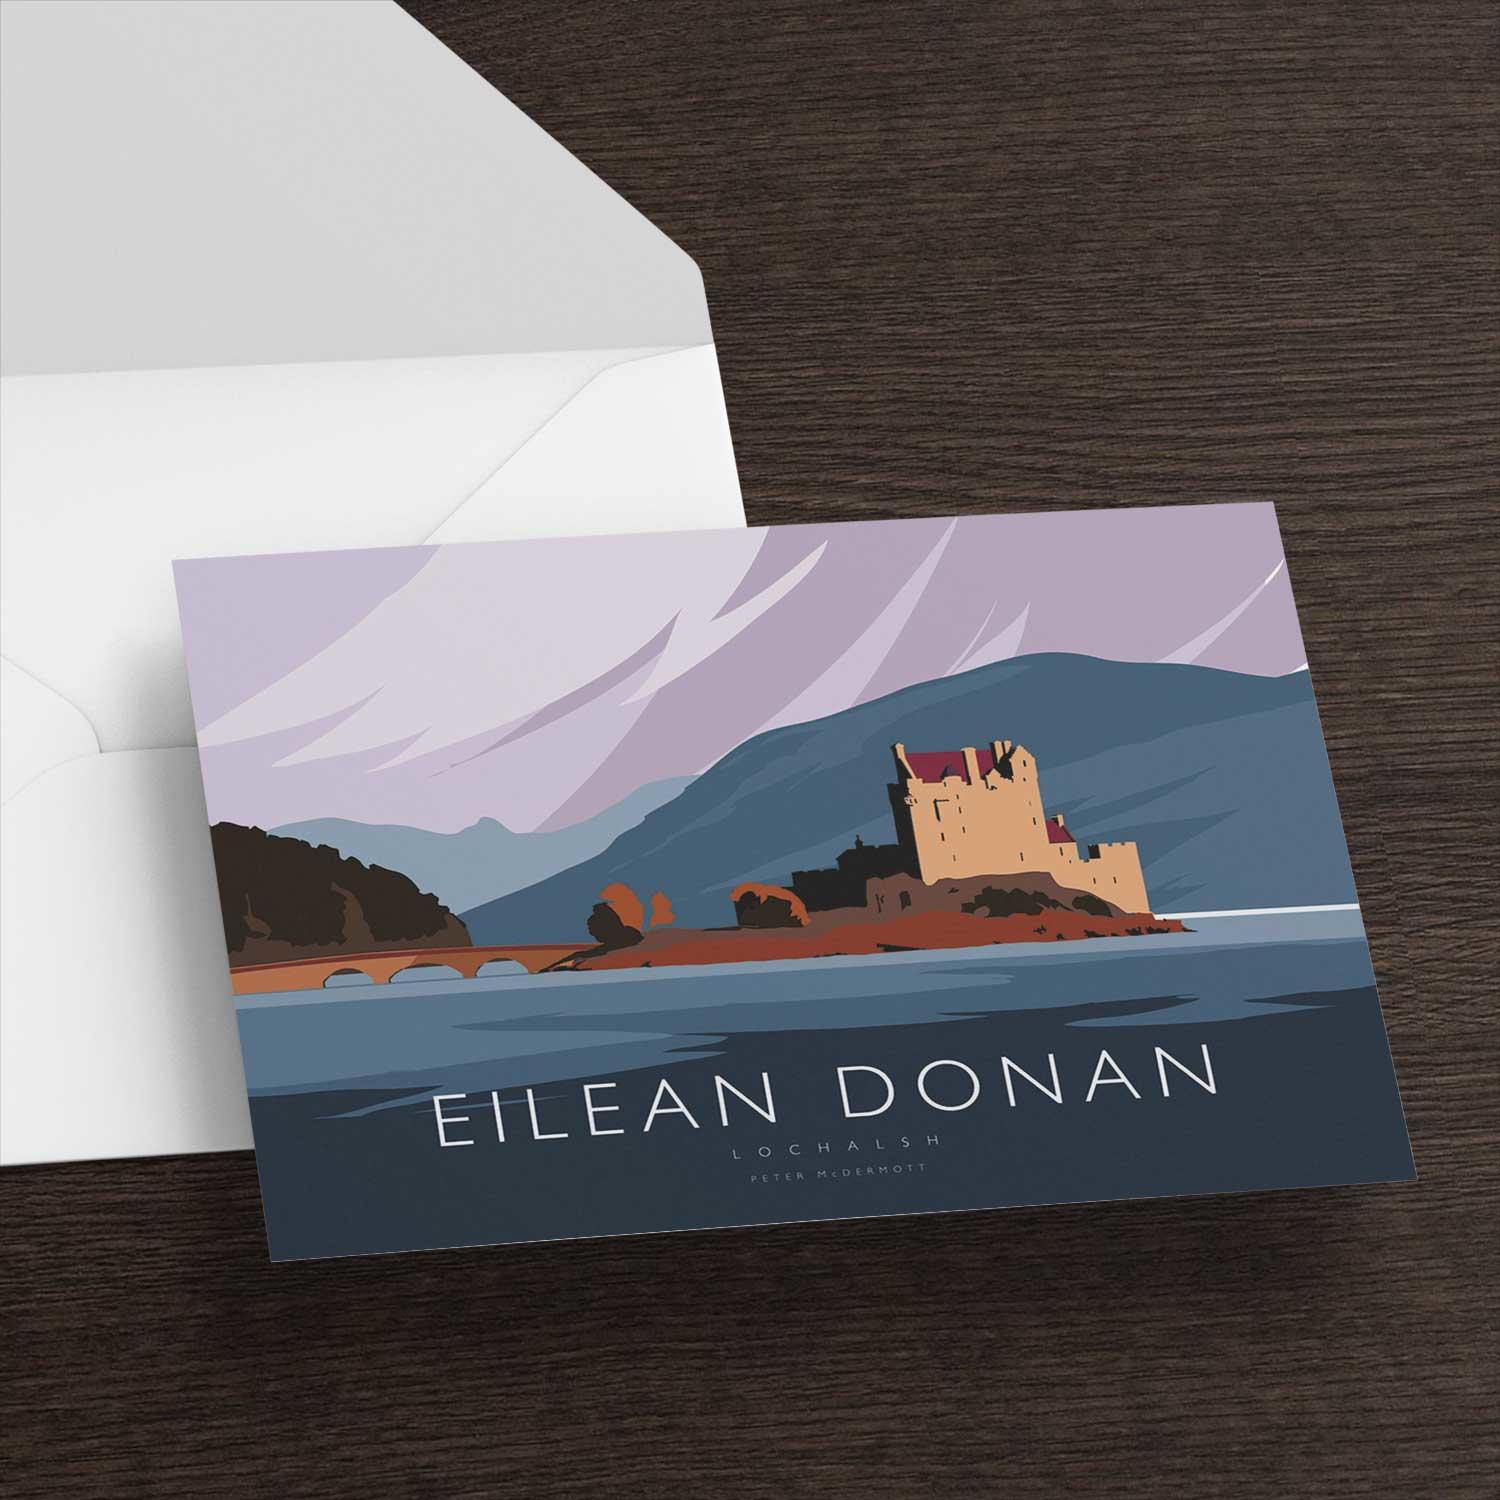 Eilean Donan Greeting Card from an original painting by artist Peter McDermott